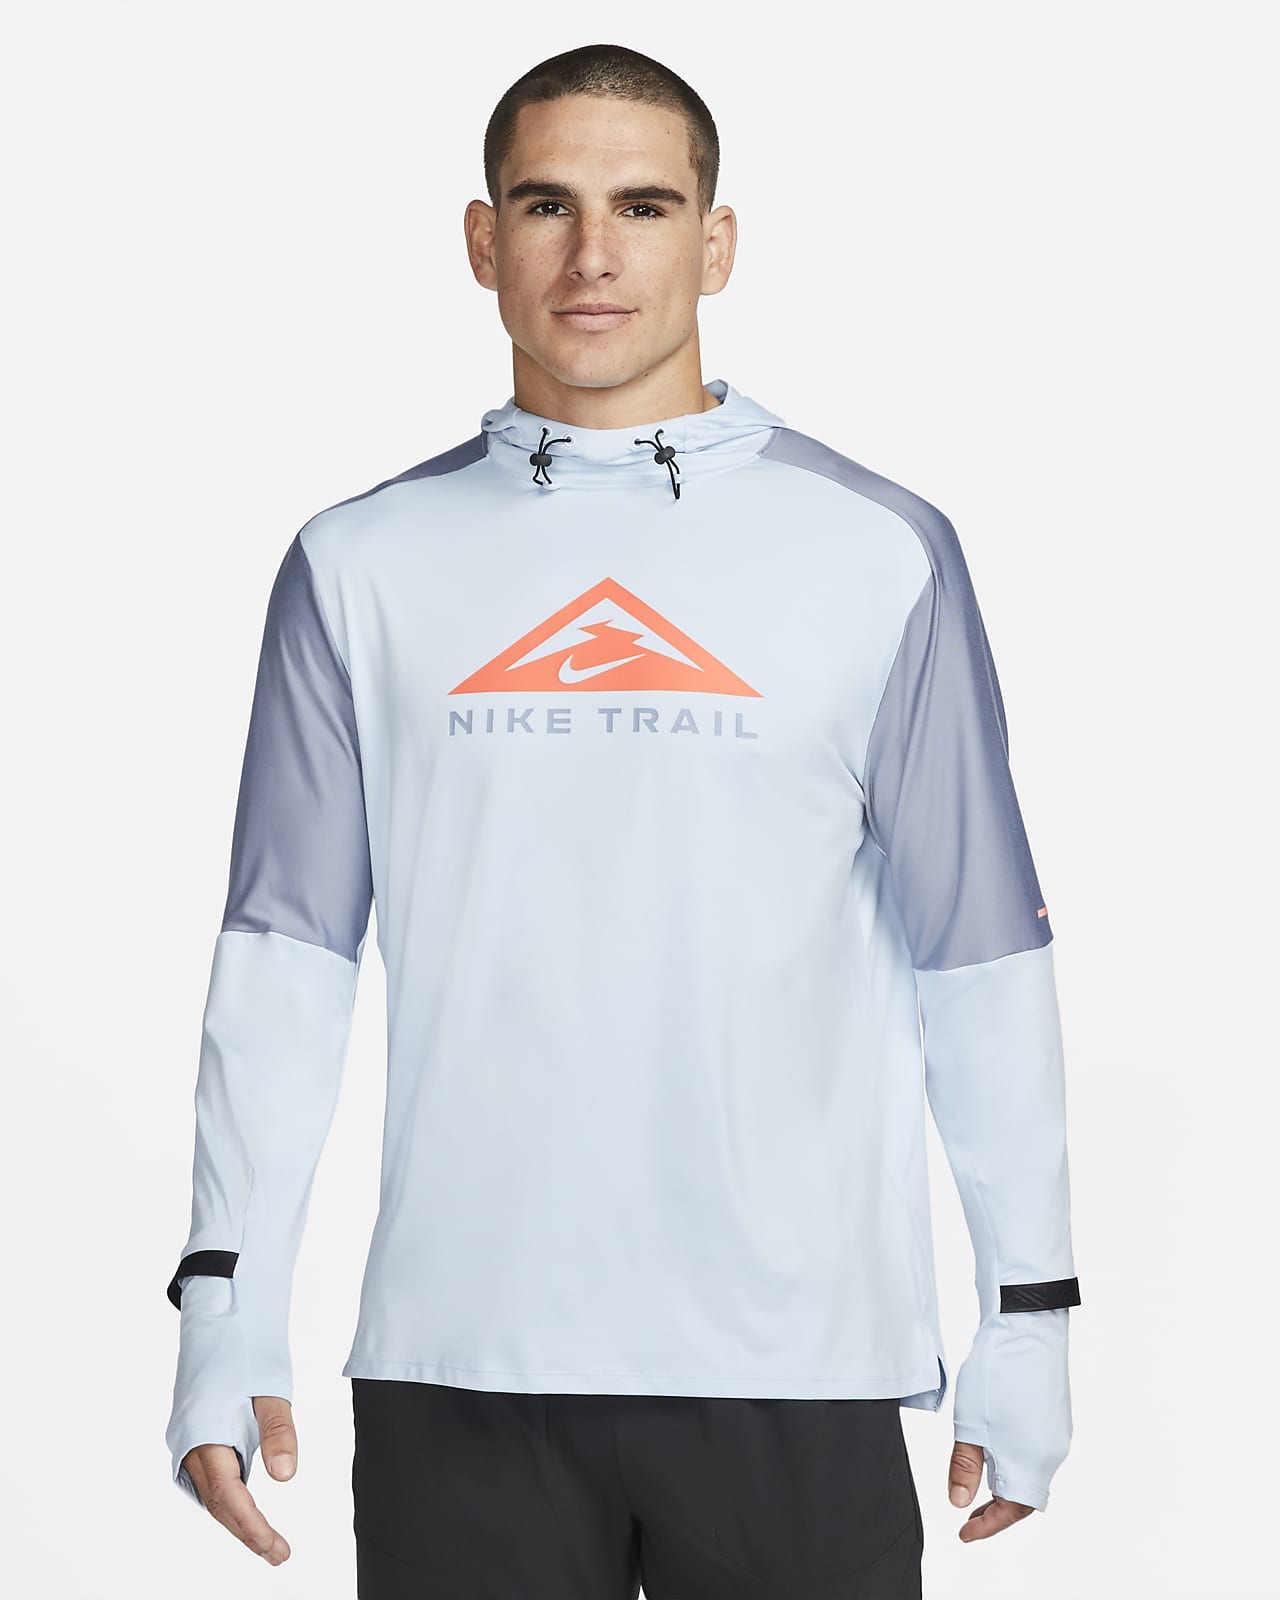 Nike Dri-FIT Trail Men's Trail Running Hoodie